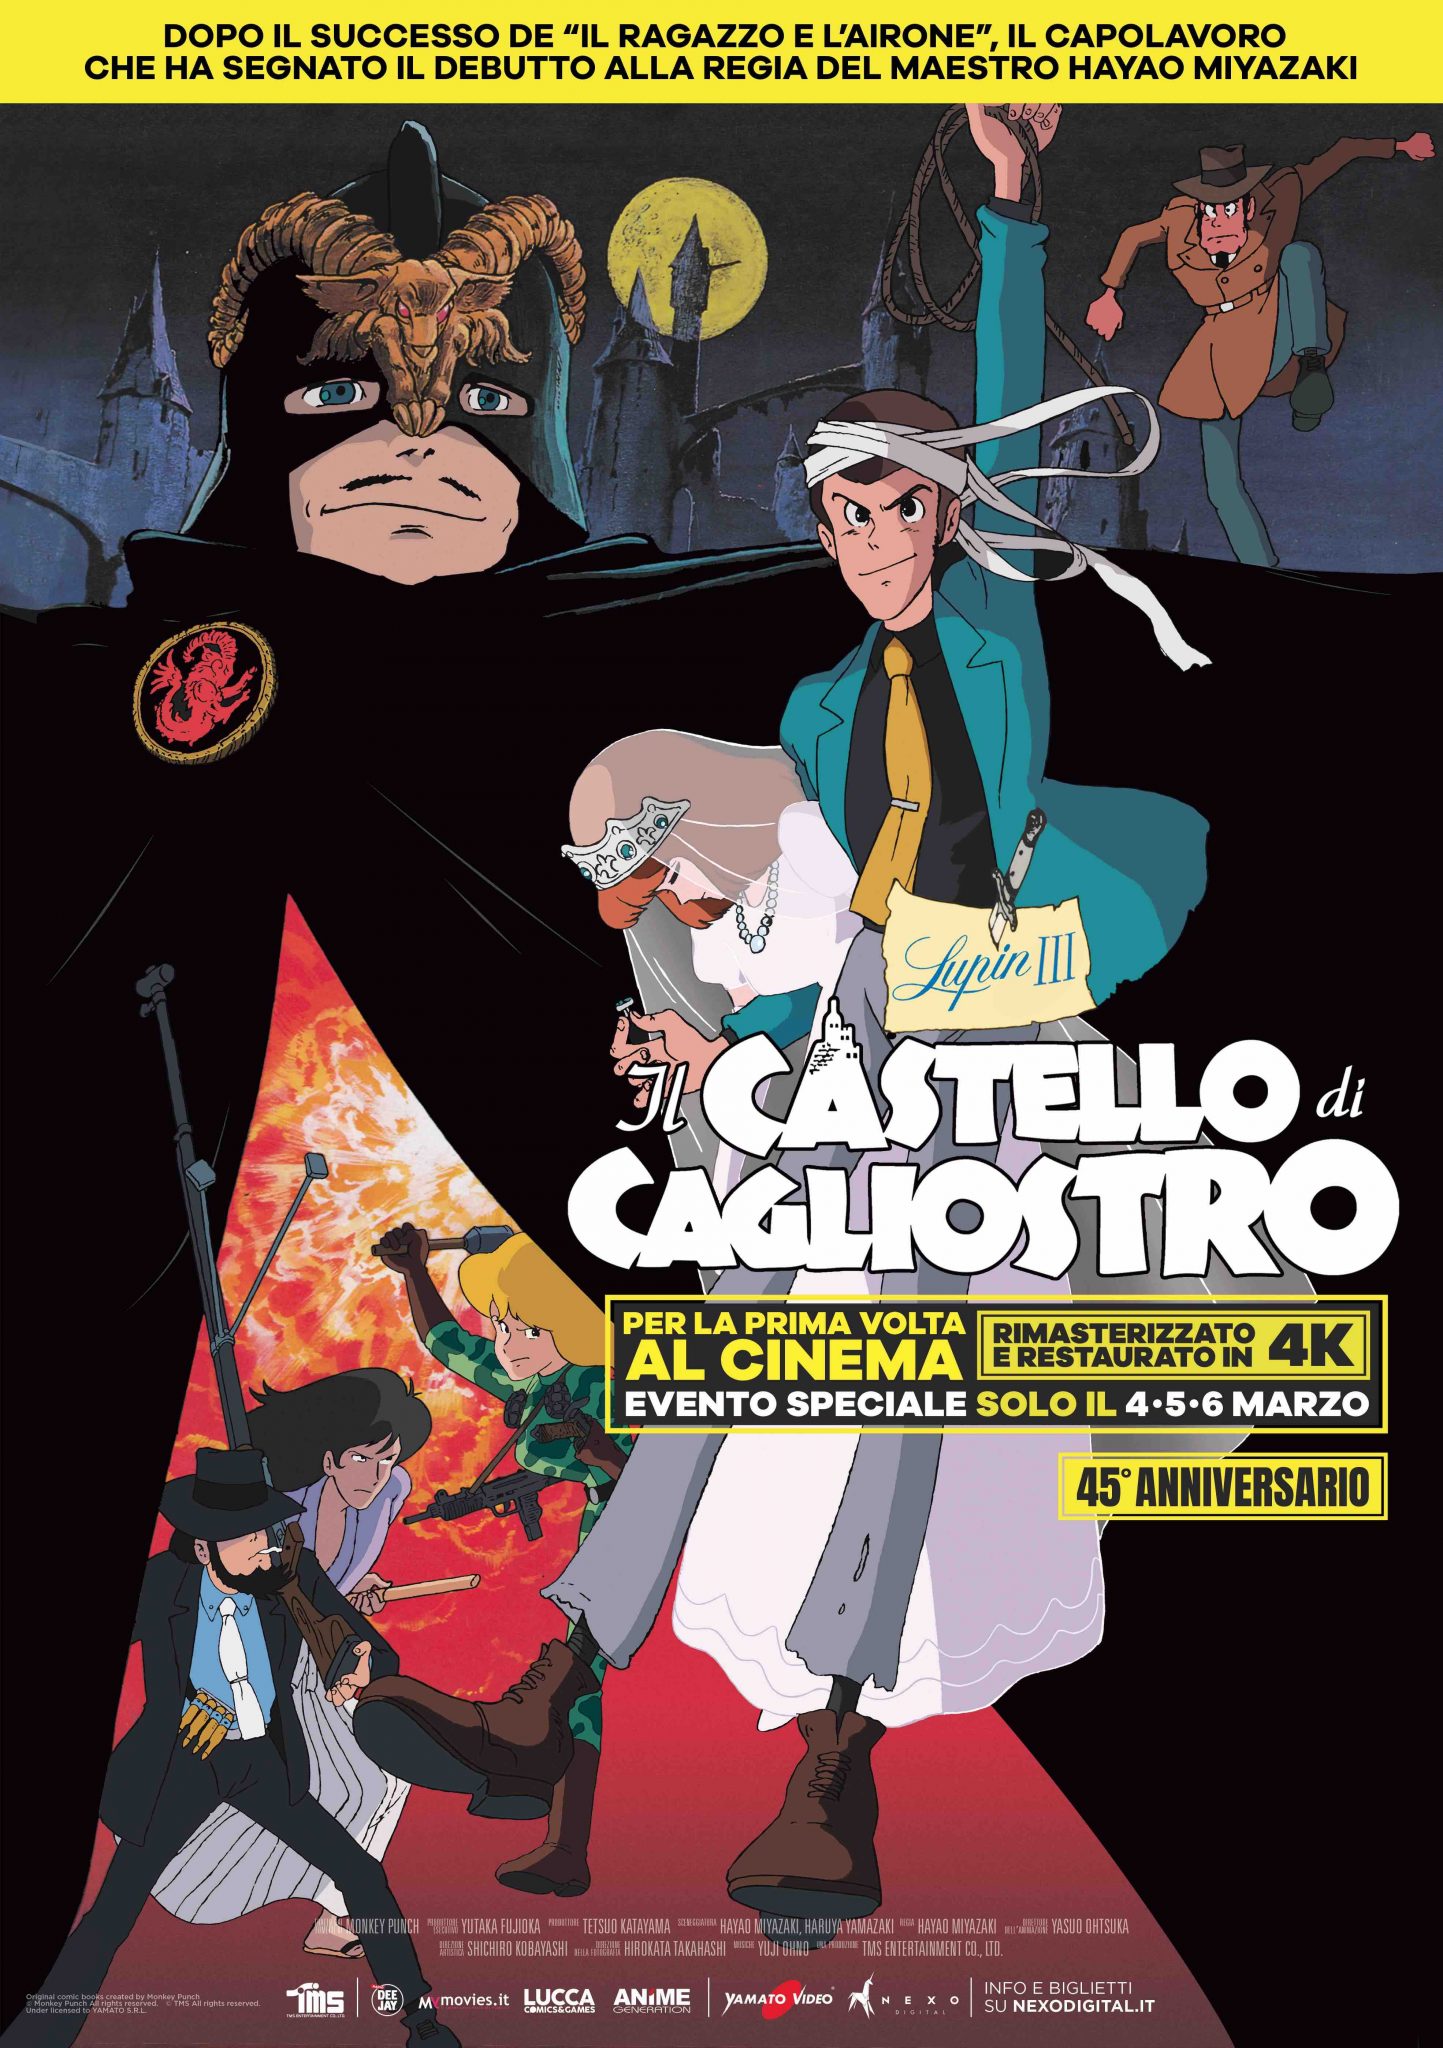 Lupin III – Il castello di Cagliostro: al cinema in 4k il primo film di Miyazaki